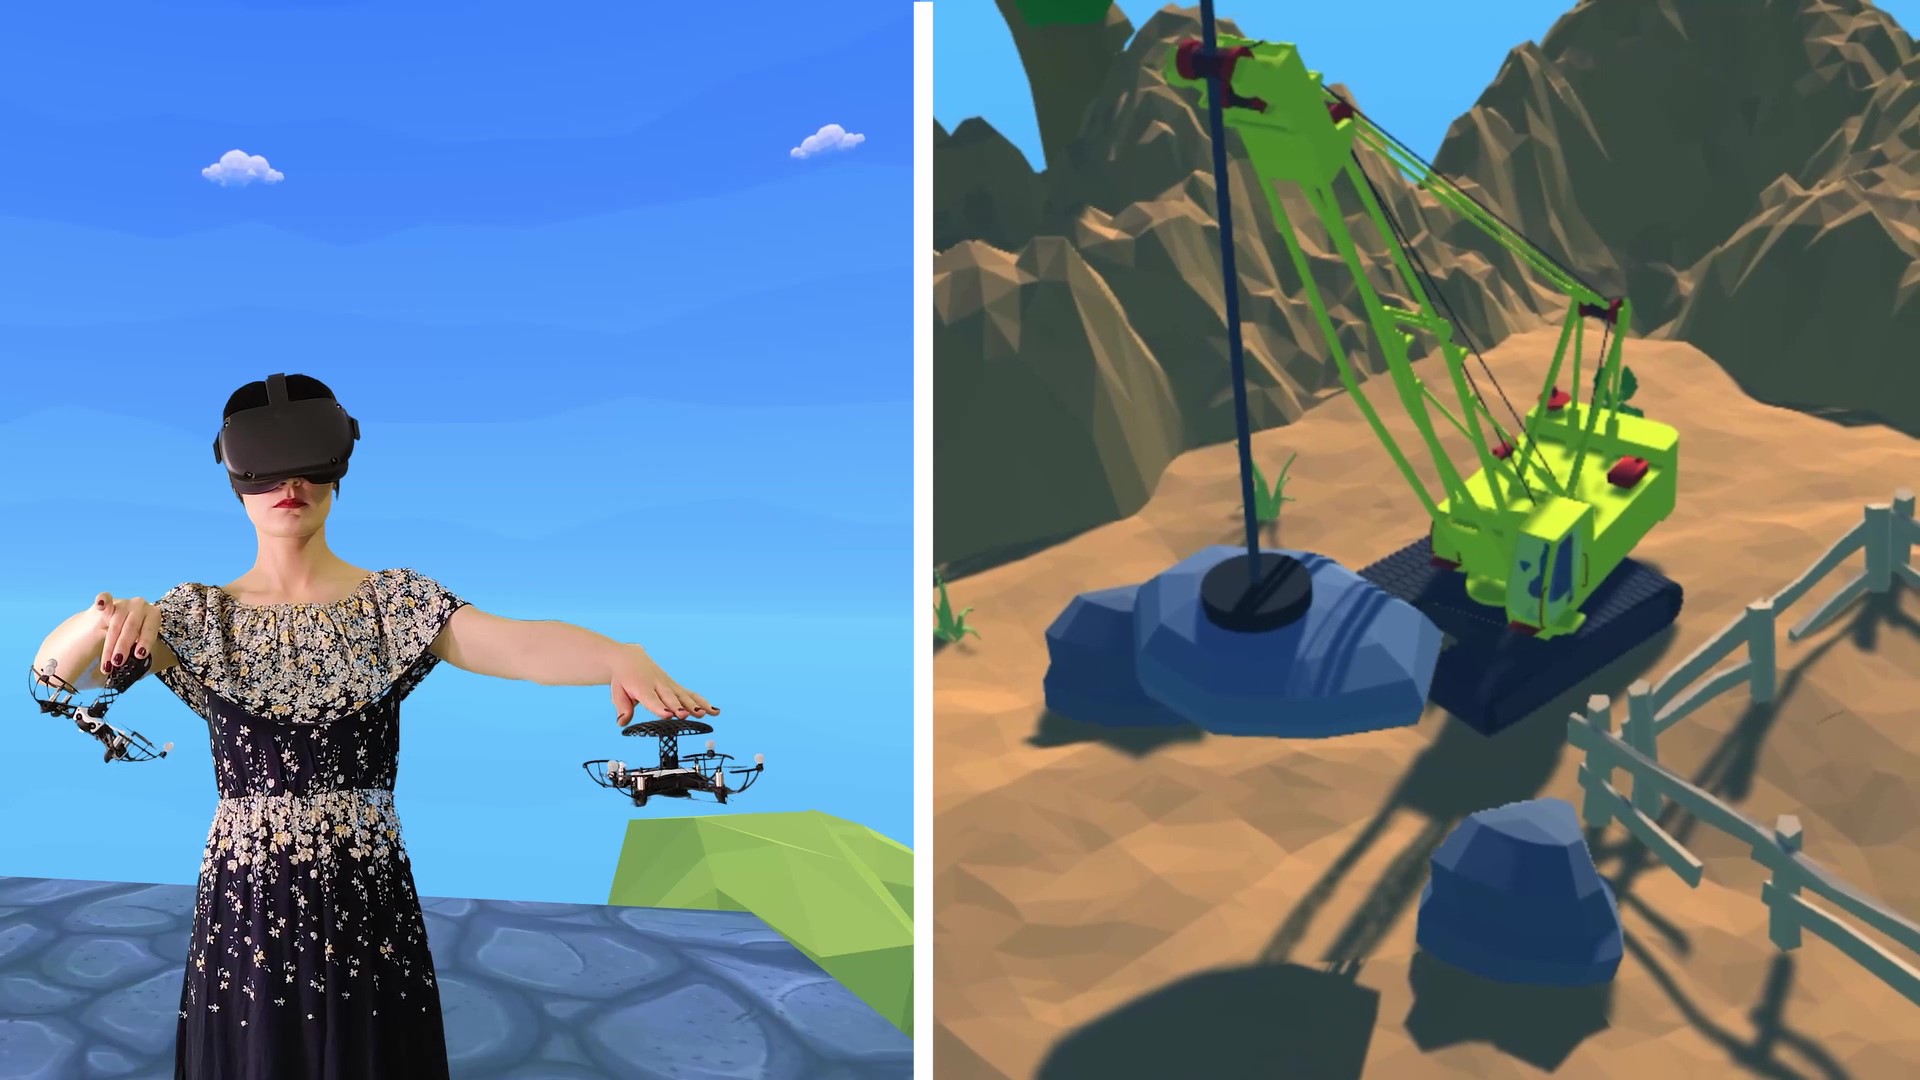 Screenshot aus dem Video. Links eine Person mit fliegenden Controllern. Rechts der Bagger, den sie in der virtuellen Welt sieht.